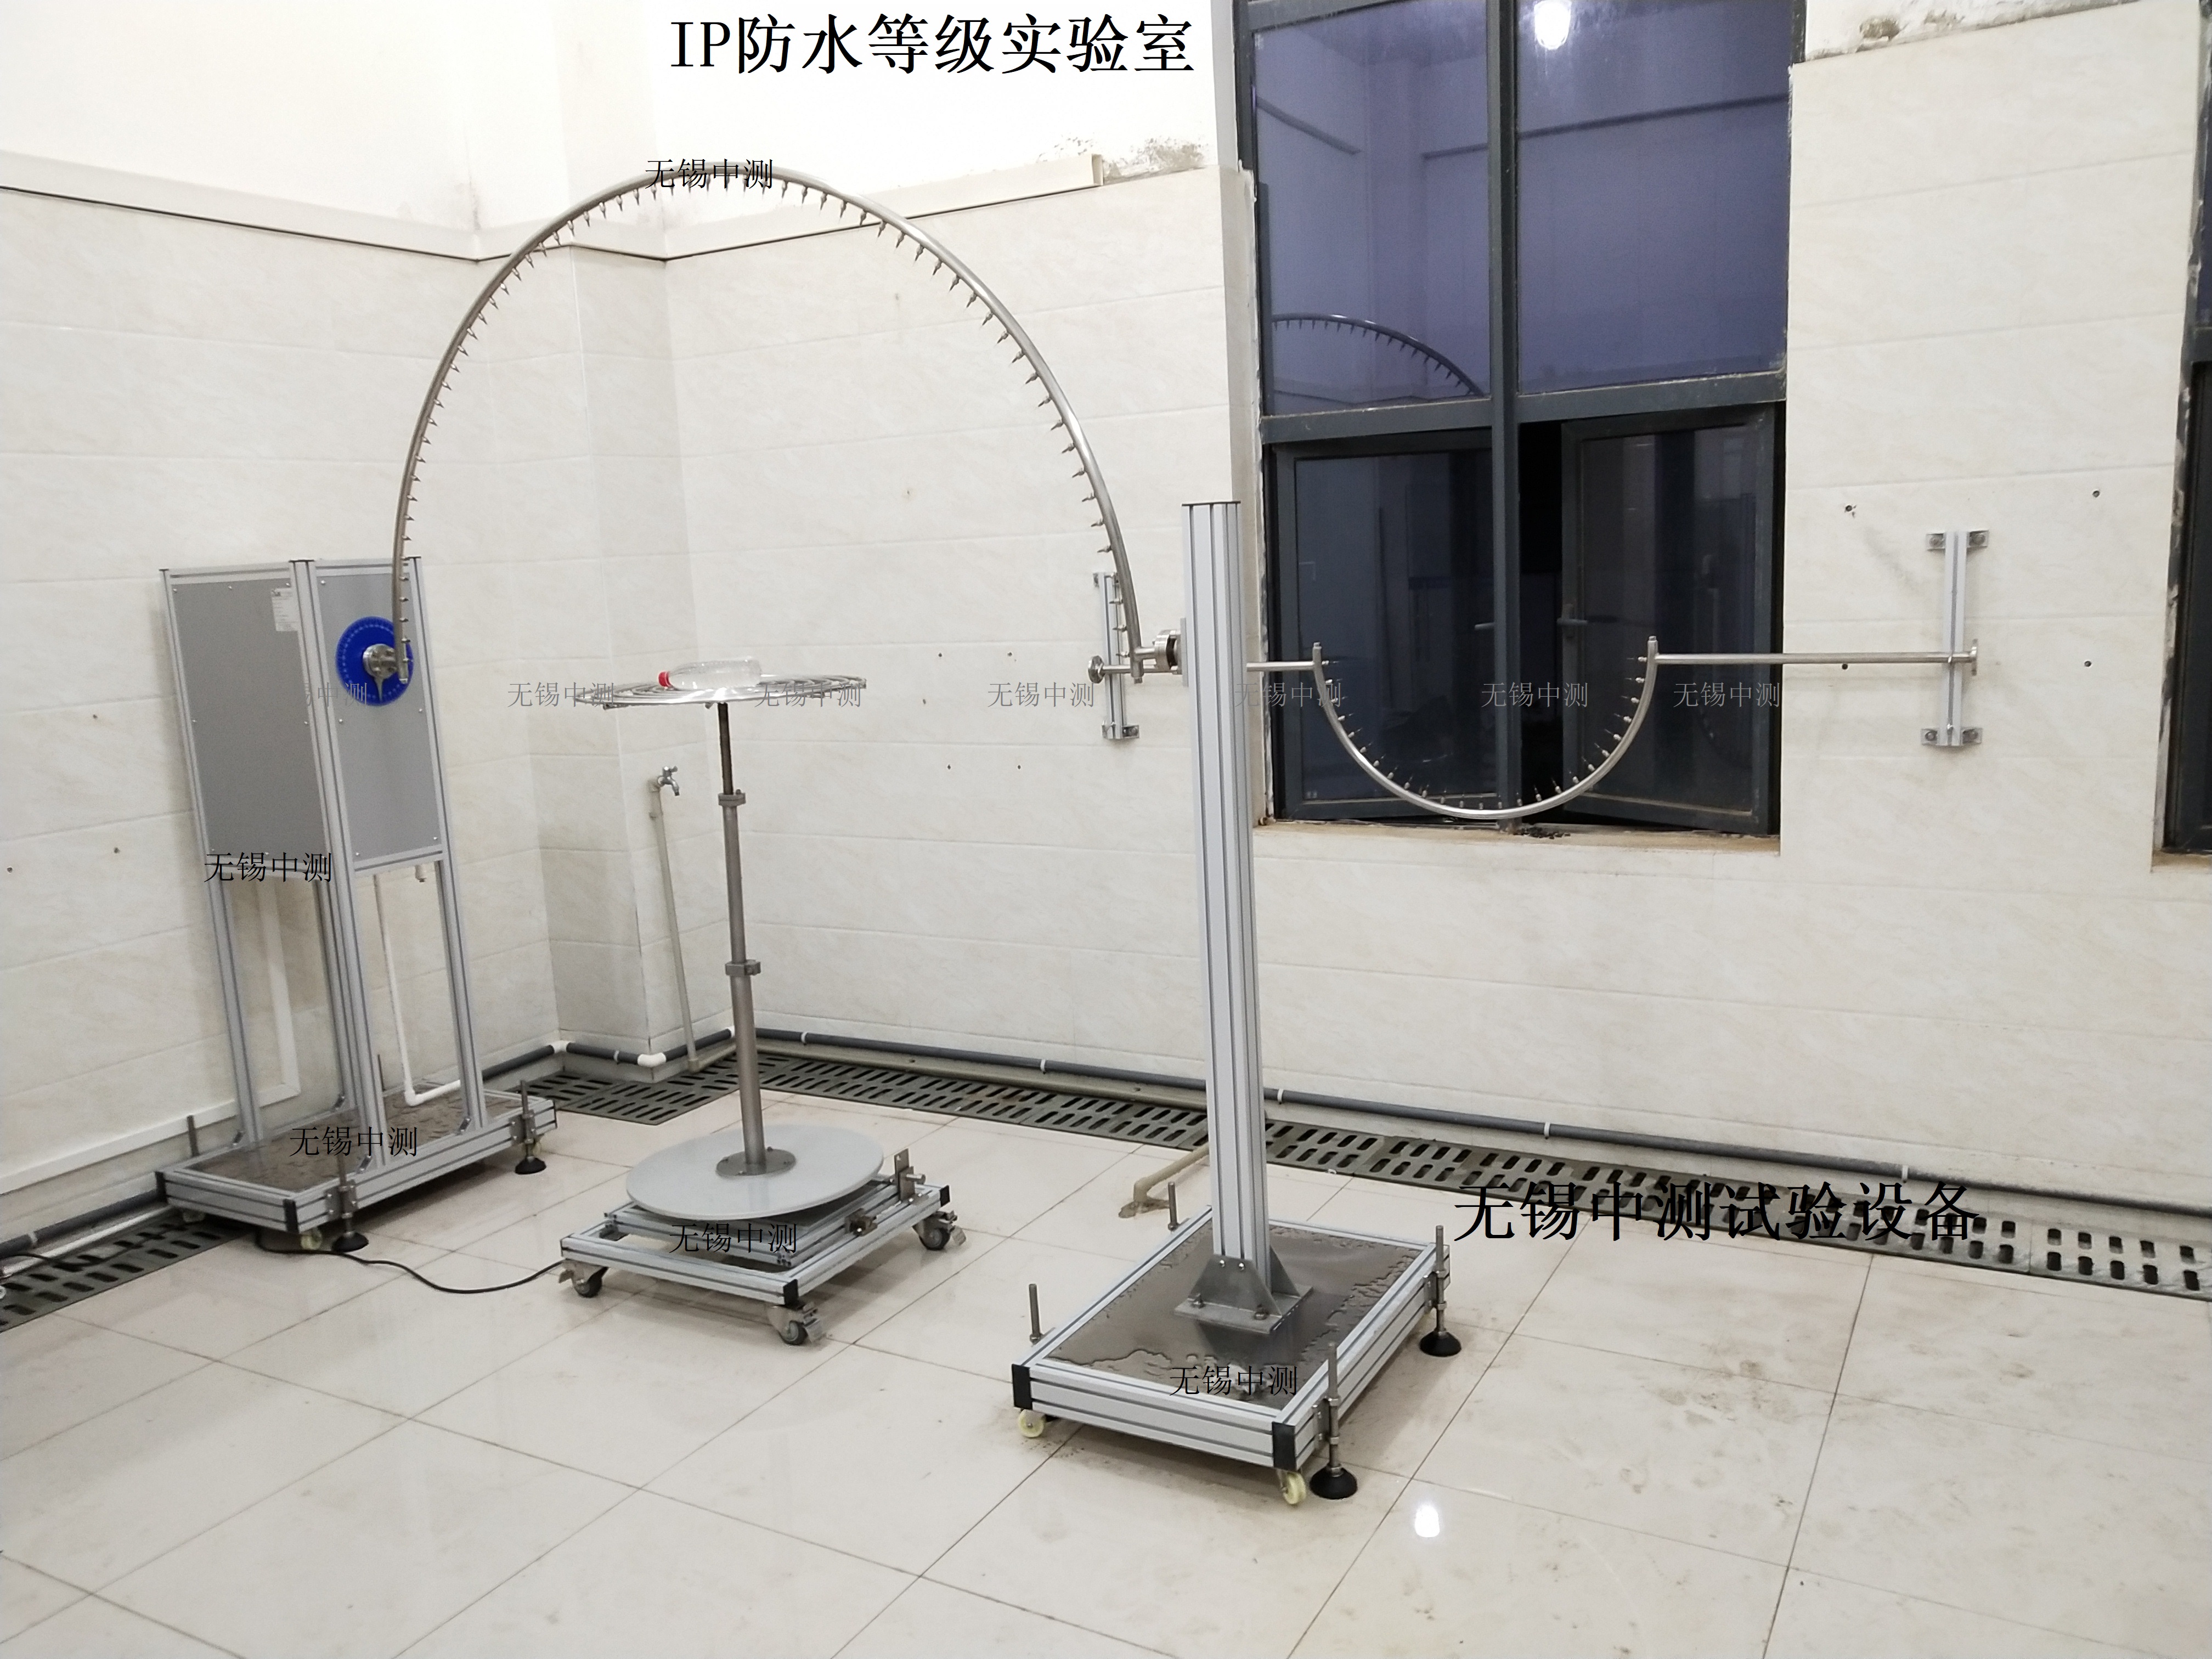 IP防水试验设备 中测IP防水测试机全自动IP防水试验机中高端品质